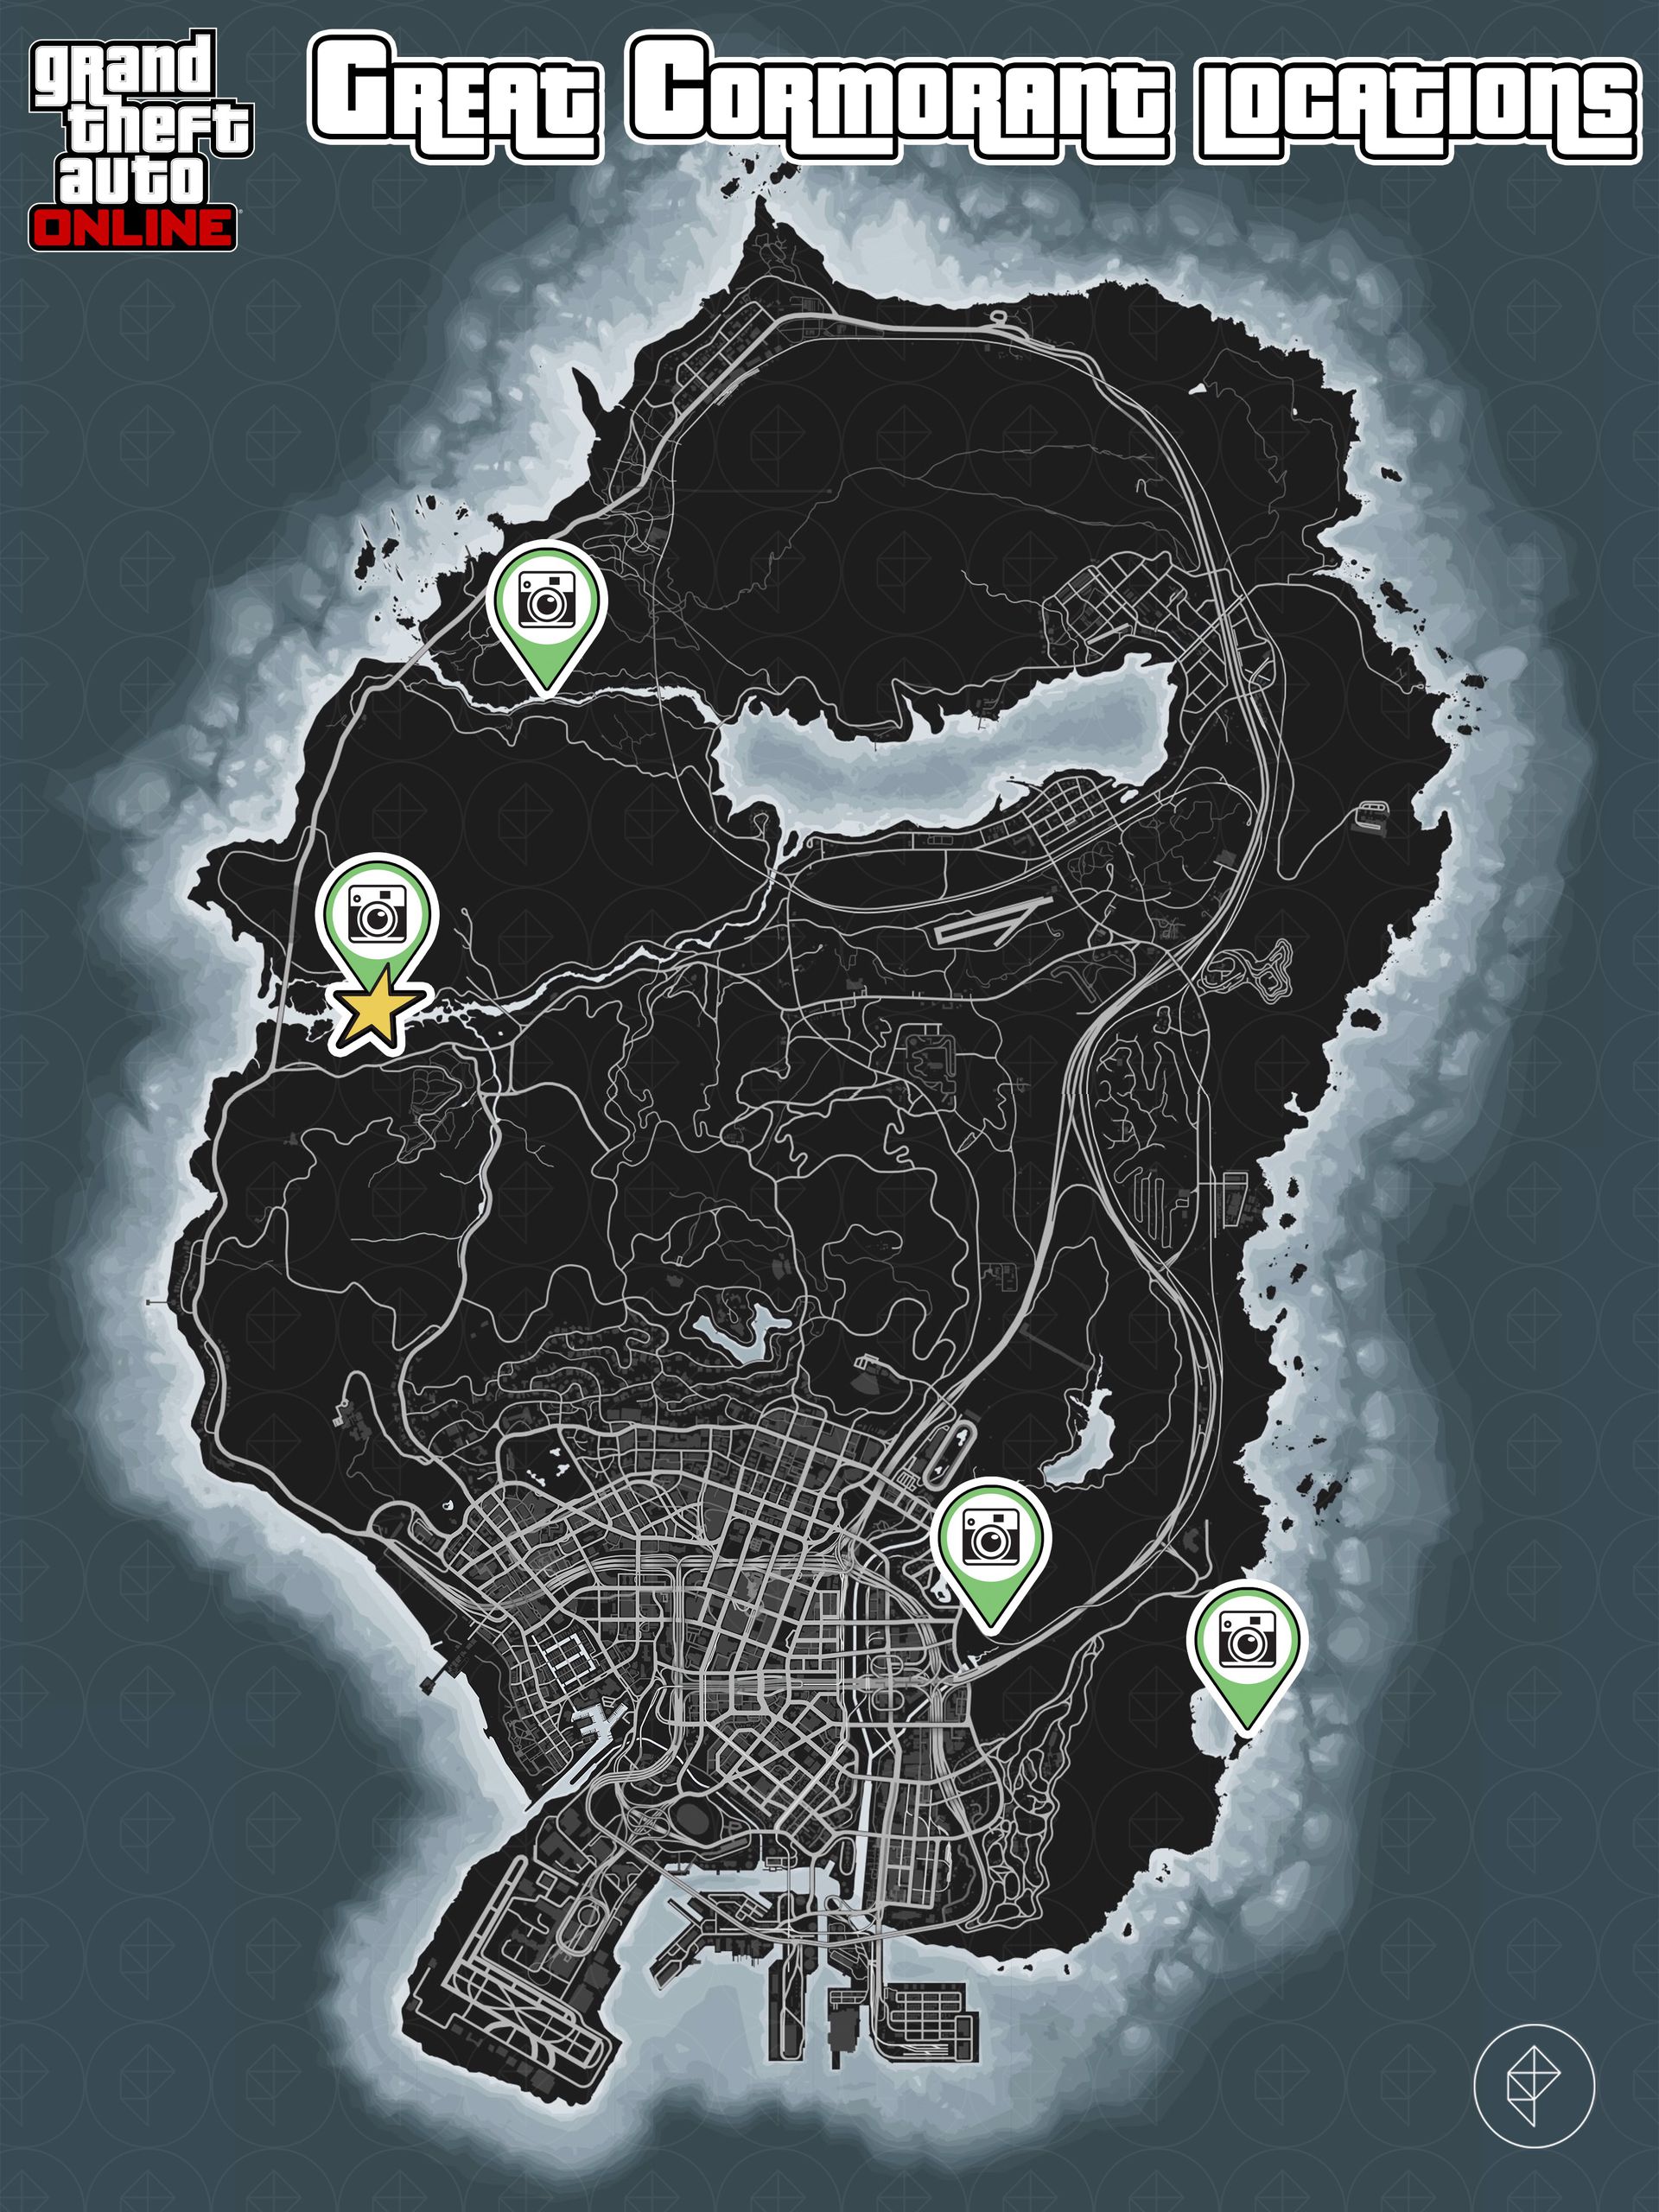 Carte de GTA Online montrant les emplacements des grands cormorans